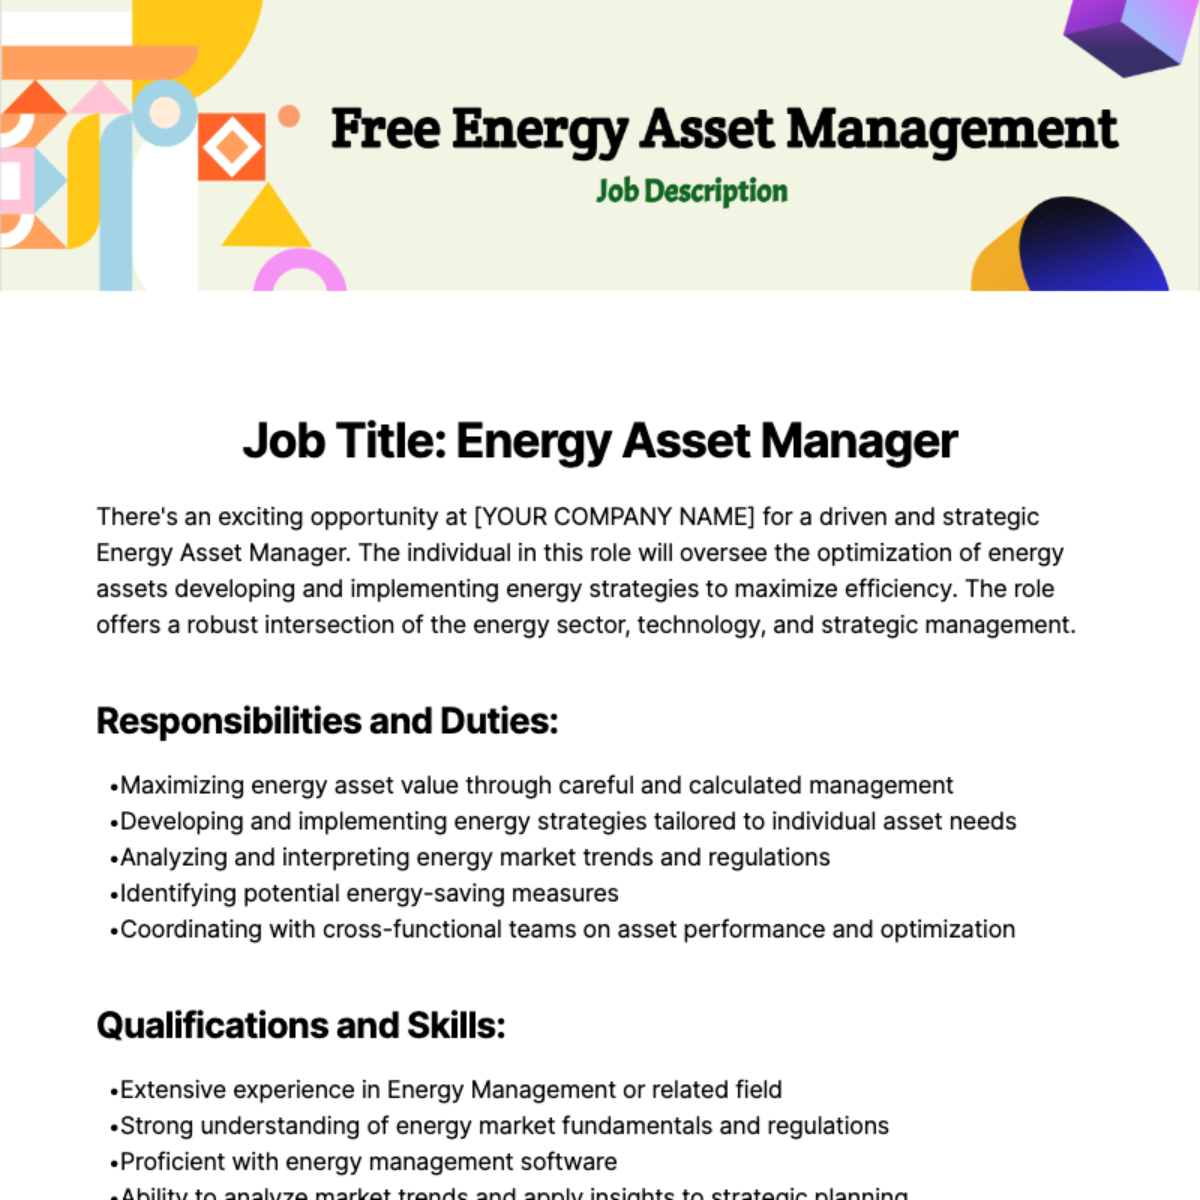 Free Energy Asset Management Job Description Template